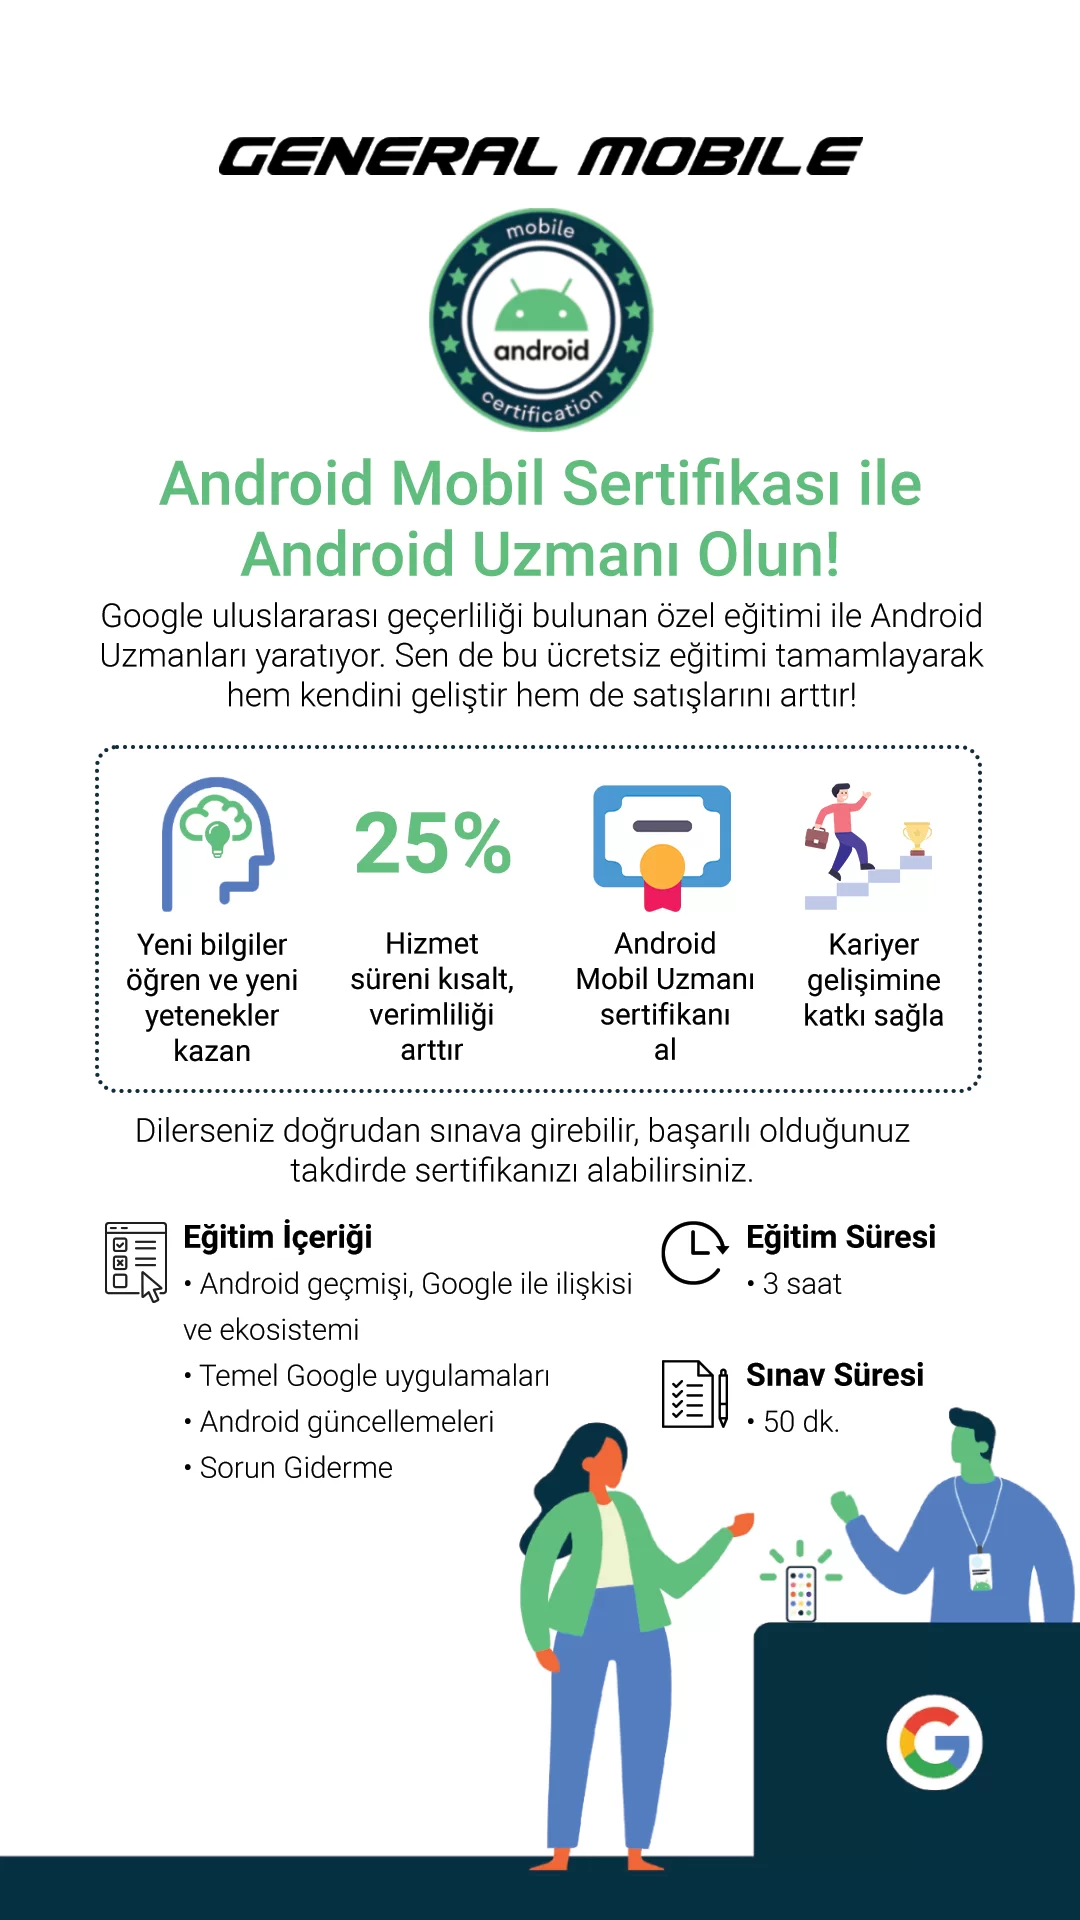 General Mobile Google İş birliği ile Android Mobil sertifika programı